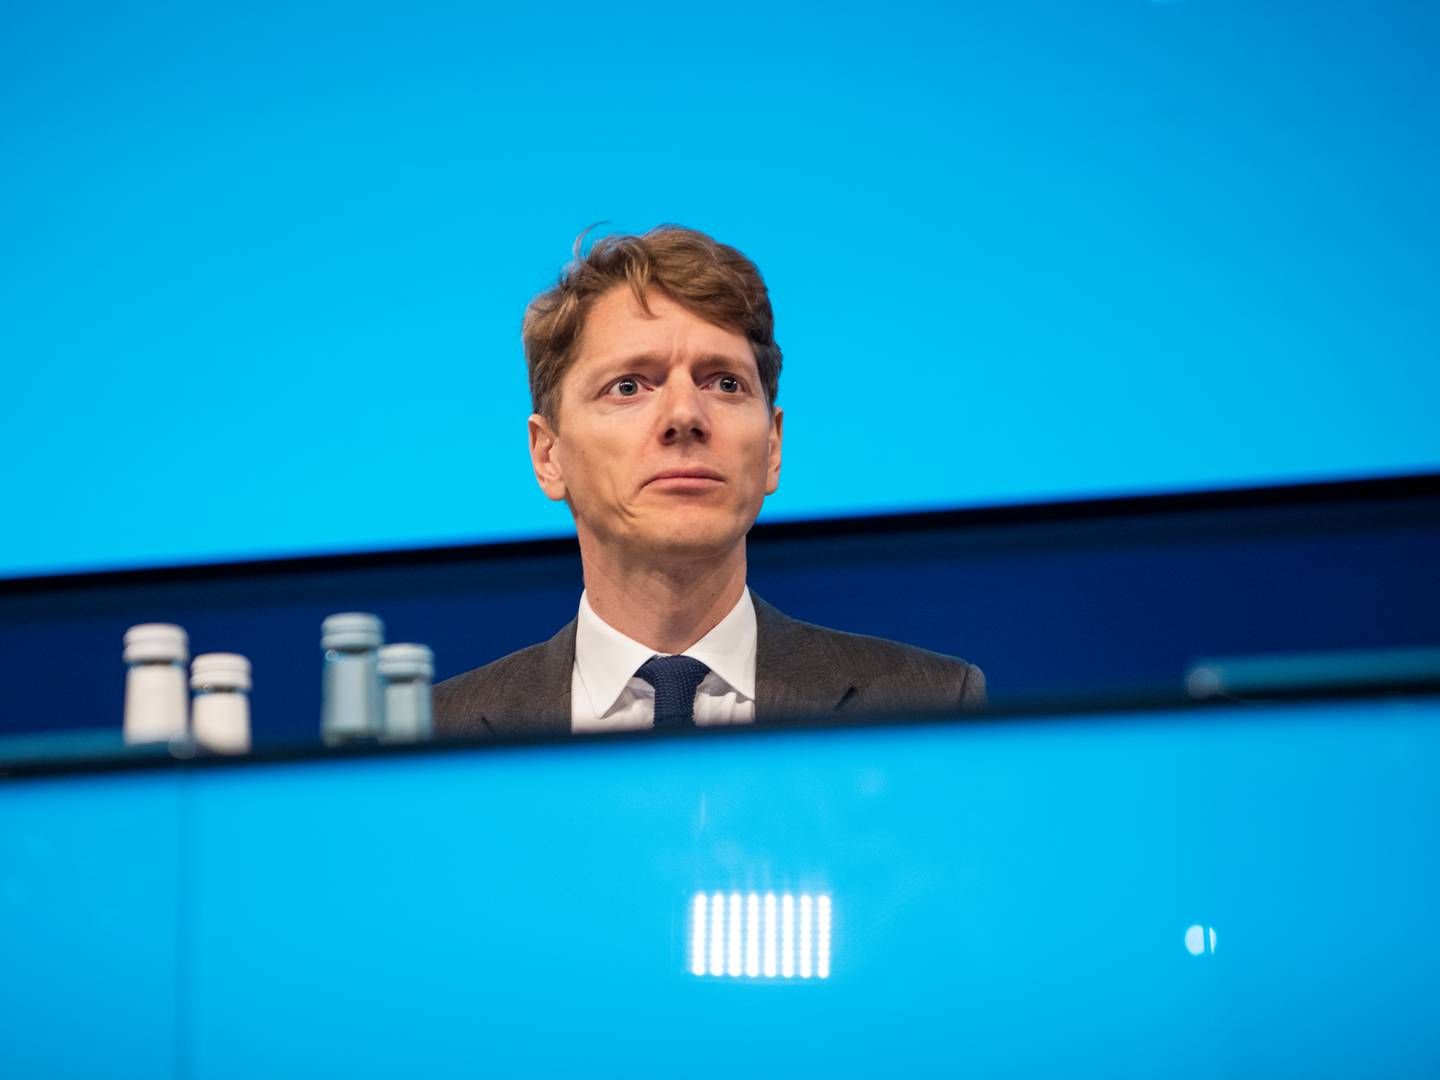 Adm. direktør Robert Uggla Mærsk fra A.P. Møller Holding kan konstatere, at schweizisk datterselskab leverer milliardtab. | Foto: Gregers Tycho